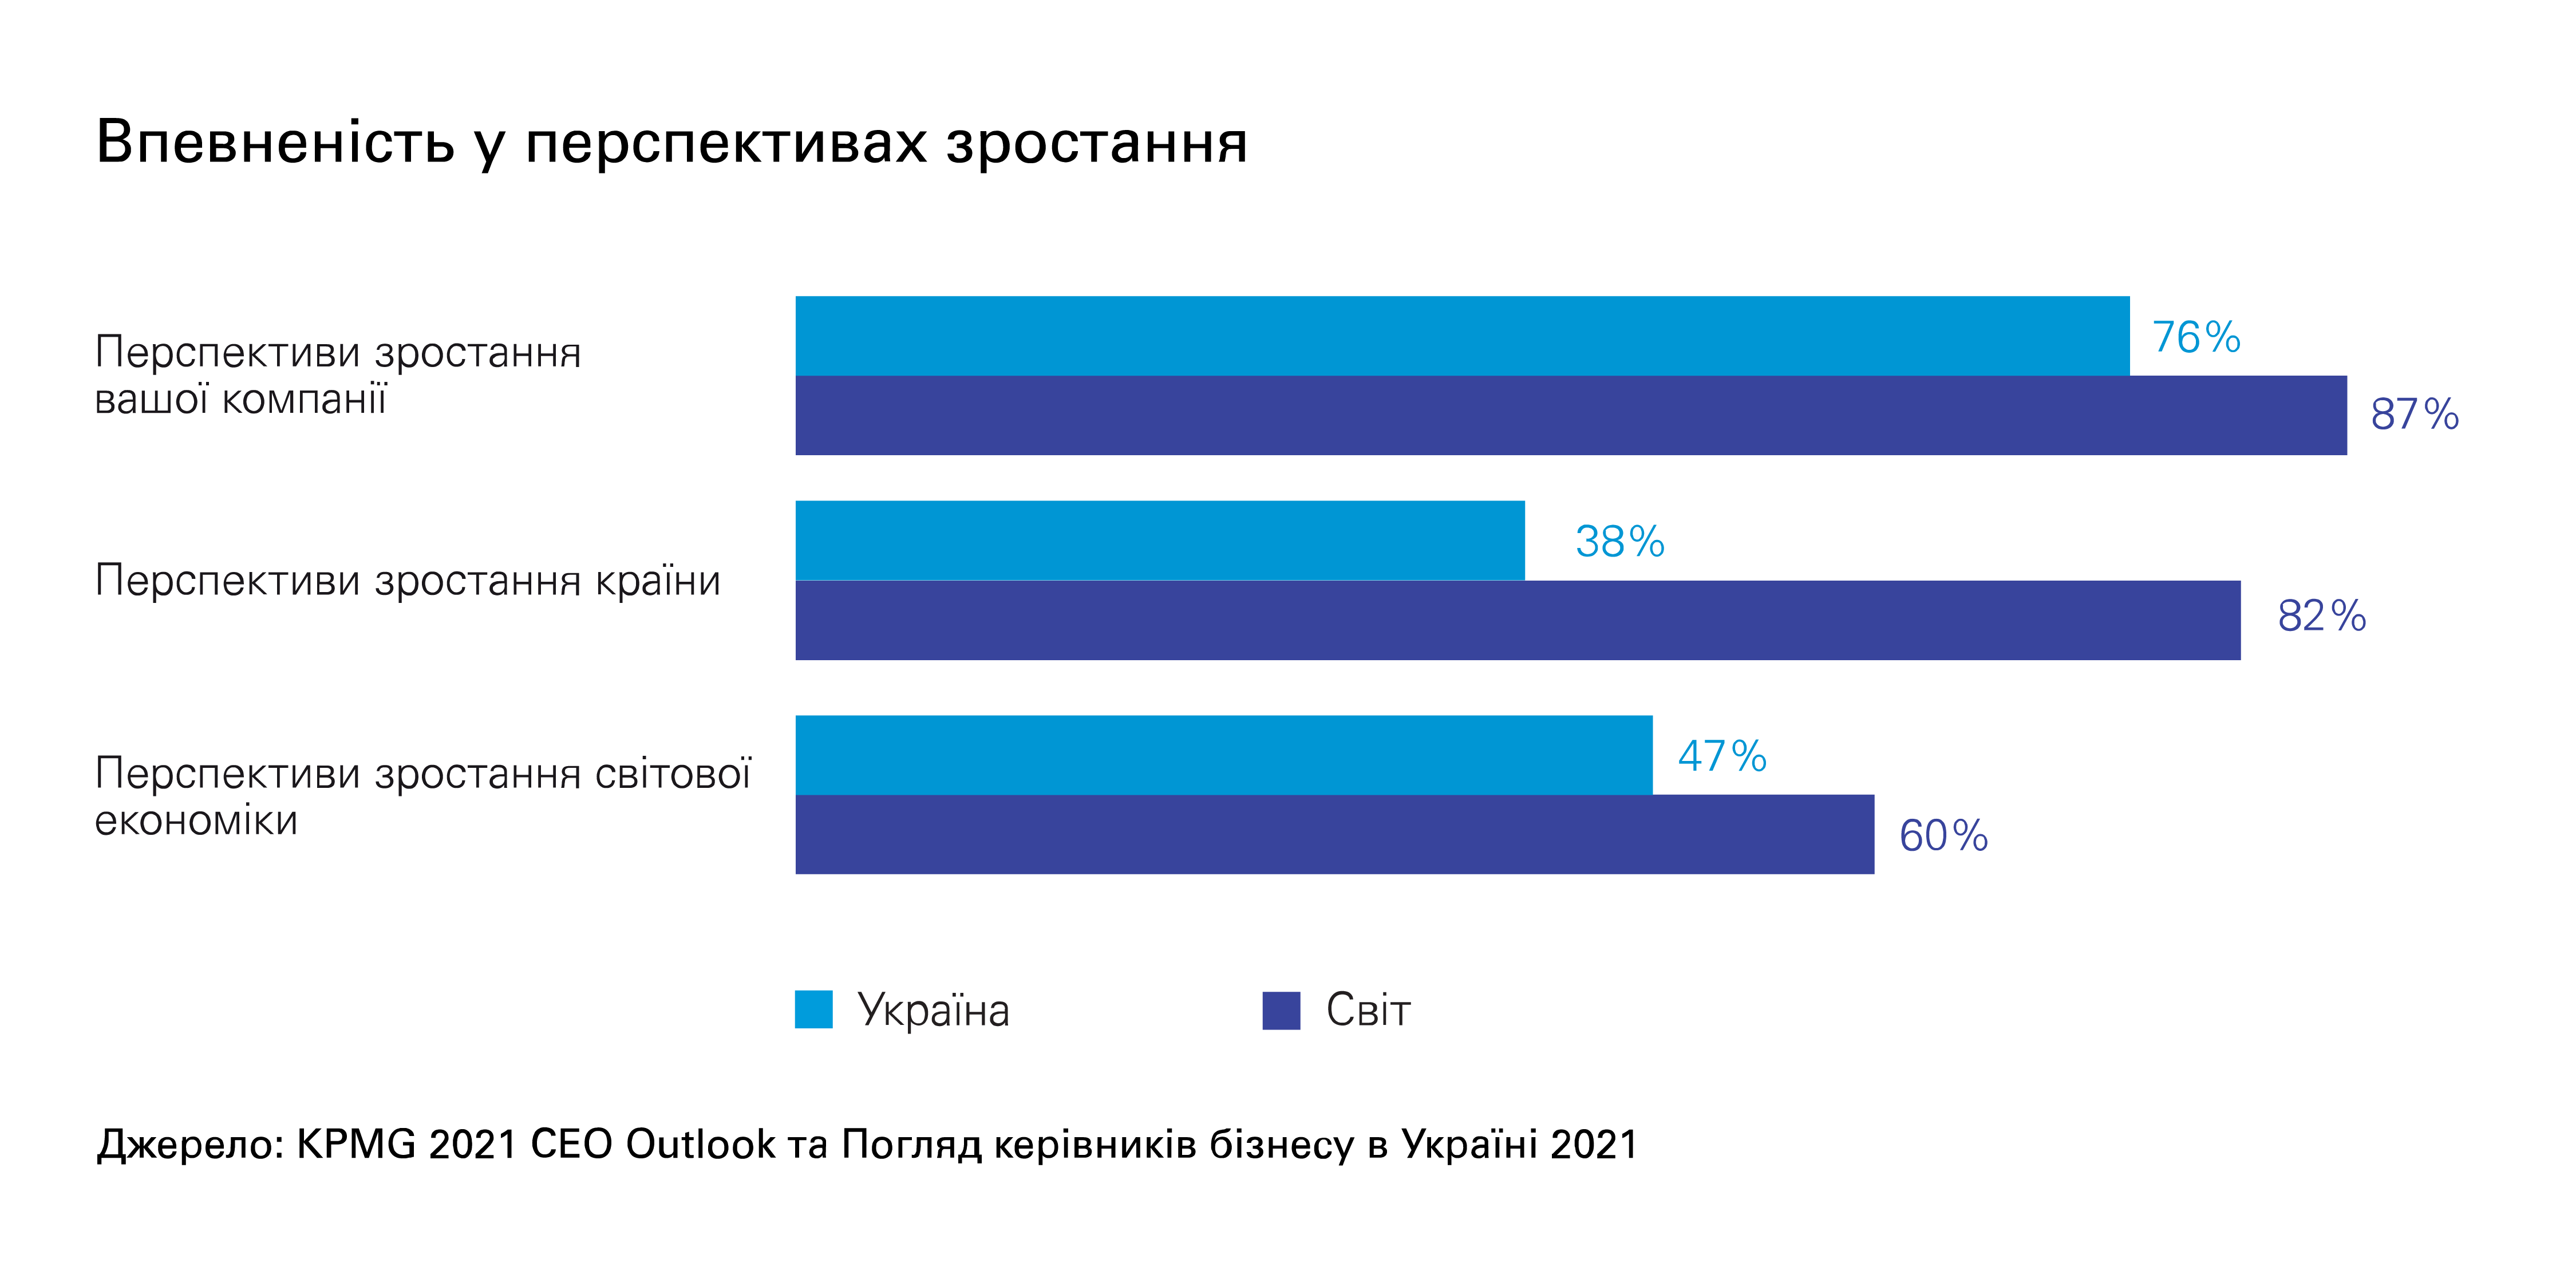 KPMG в Украине представляет результаты ежегодного исследования  «Взгляд руководителей бизнеса» в Украине и мире в 2021 году»